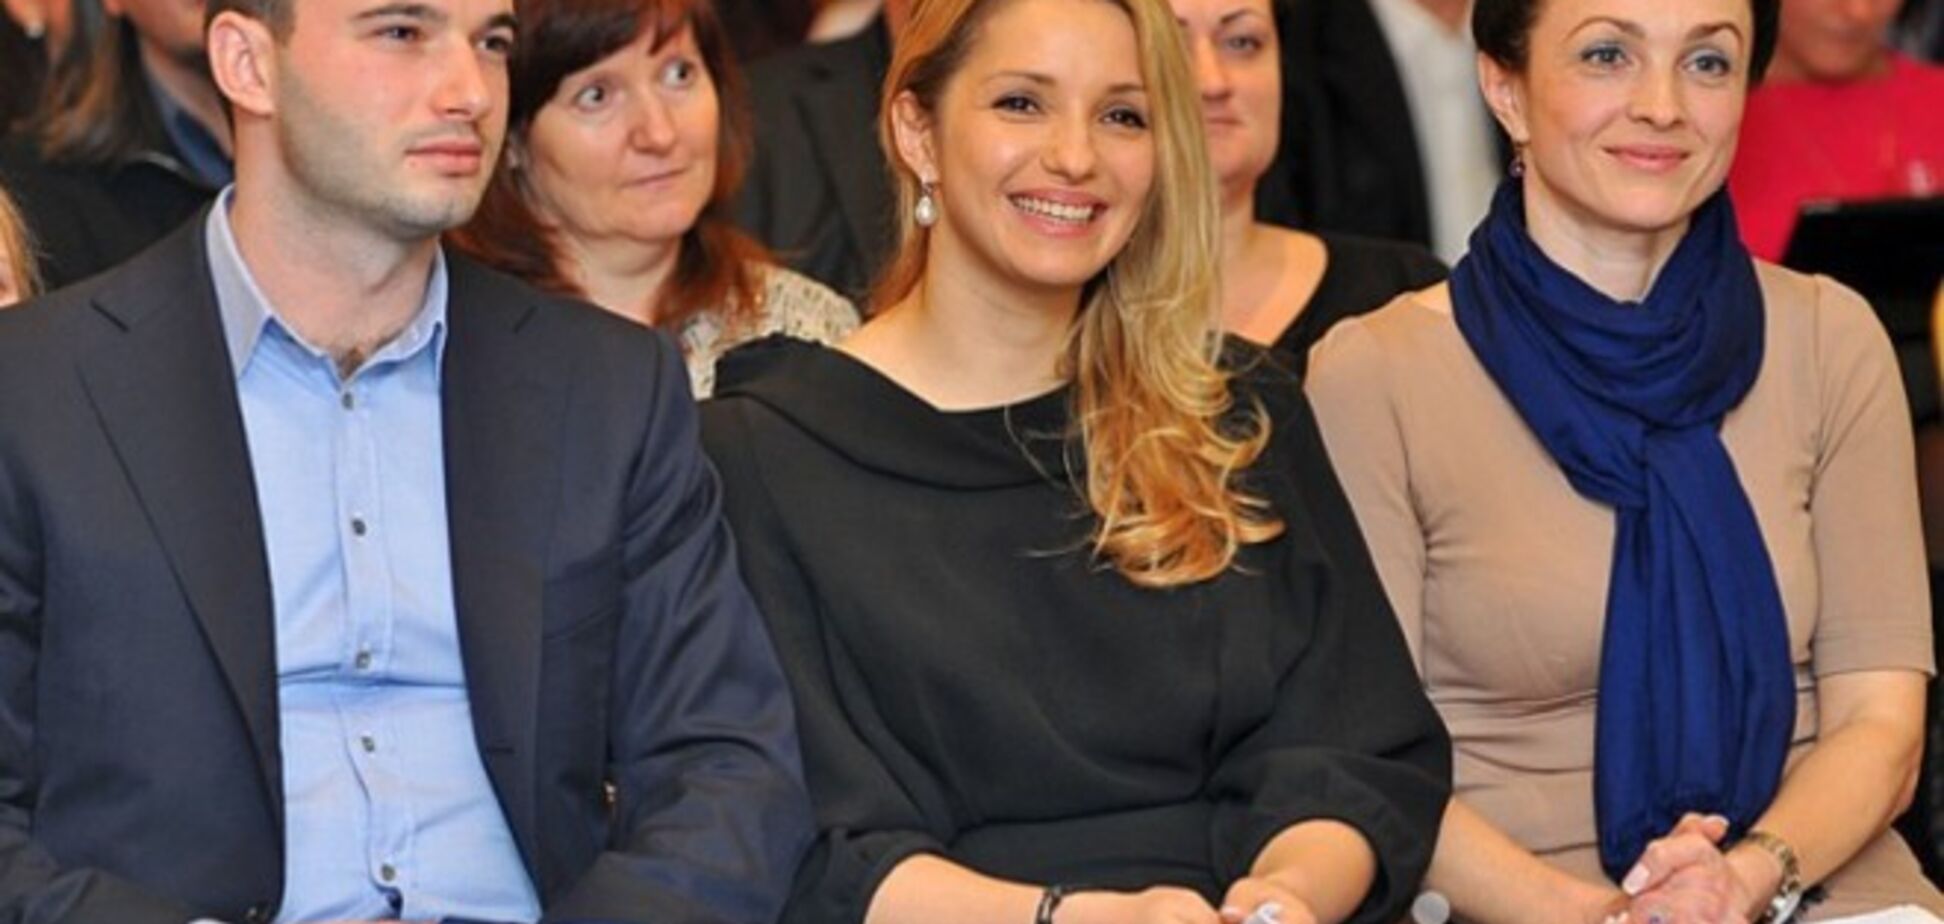 Дочь Тимошенко заплатила за свет и звук на своей свадьбе $200 тысяч - источник